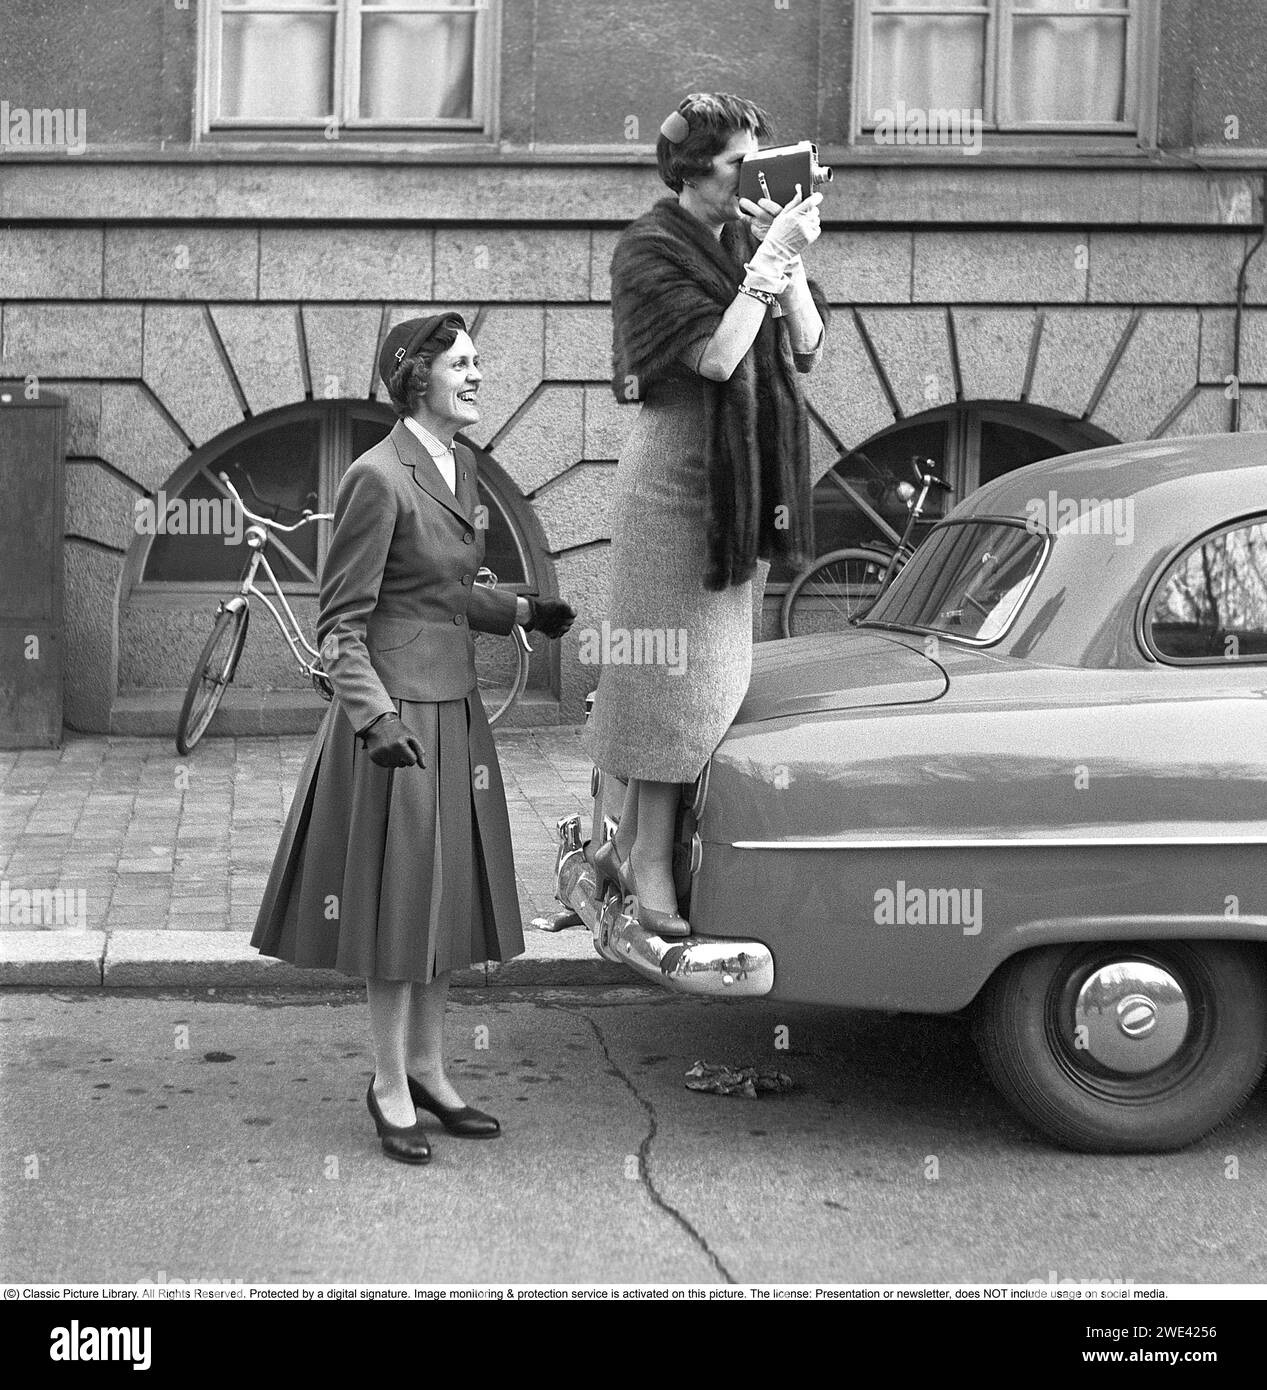 In den 1950er Jahren Eine ältere Frau mit einer Filmkamera stand auf dem Stoßfänger eines Autos, um einen besseren Blick auf das zu bekommen, was sie gerade filmt. Eine jüngere Frau steht daneben und sieht glücklich aus. Sie sind Verwandte eines der kürzlich abgeschlossenen Studenten, die feiern, dass sie ihre Immatrikulationsprüfung bestanden haben und eine Stockholmer Straße hinunterlaufen. 1954. Svahn Ref. SVA2 Stockfoto